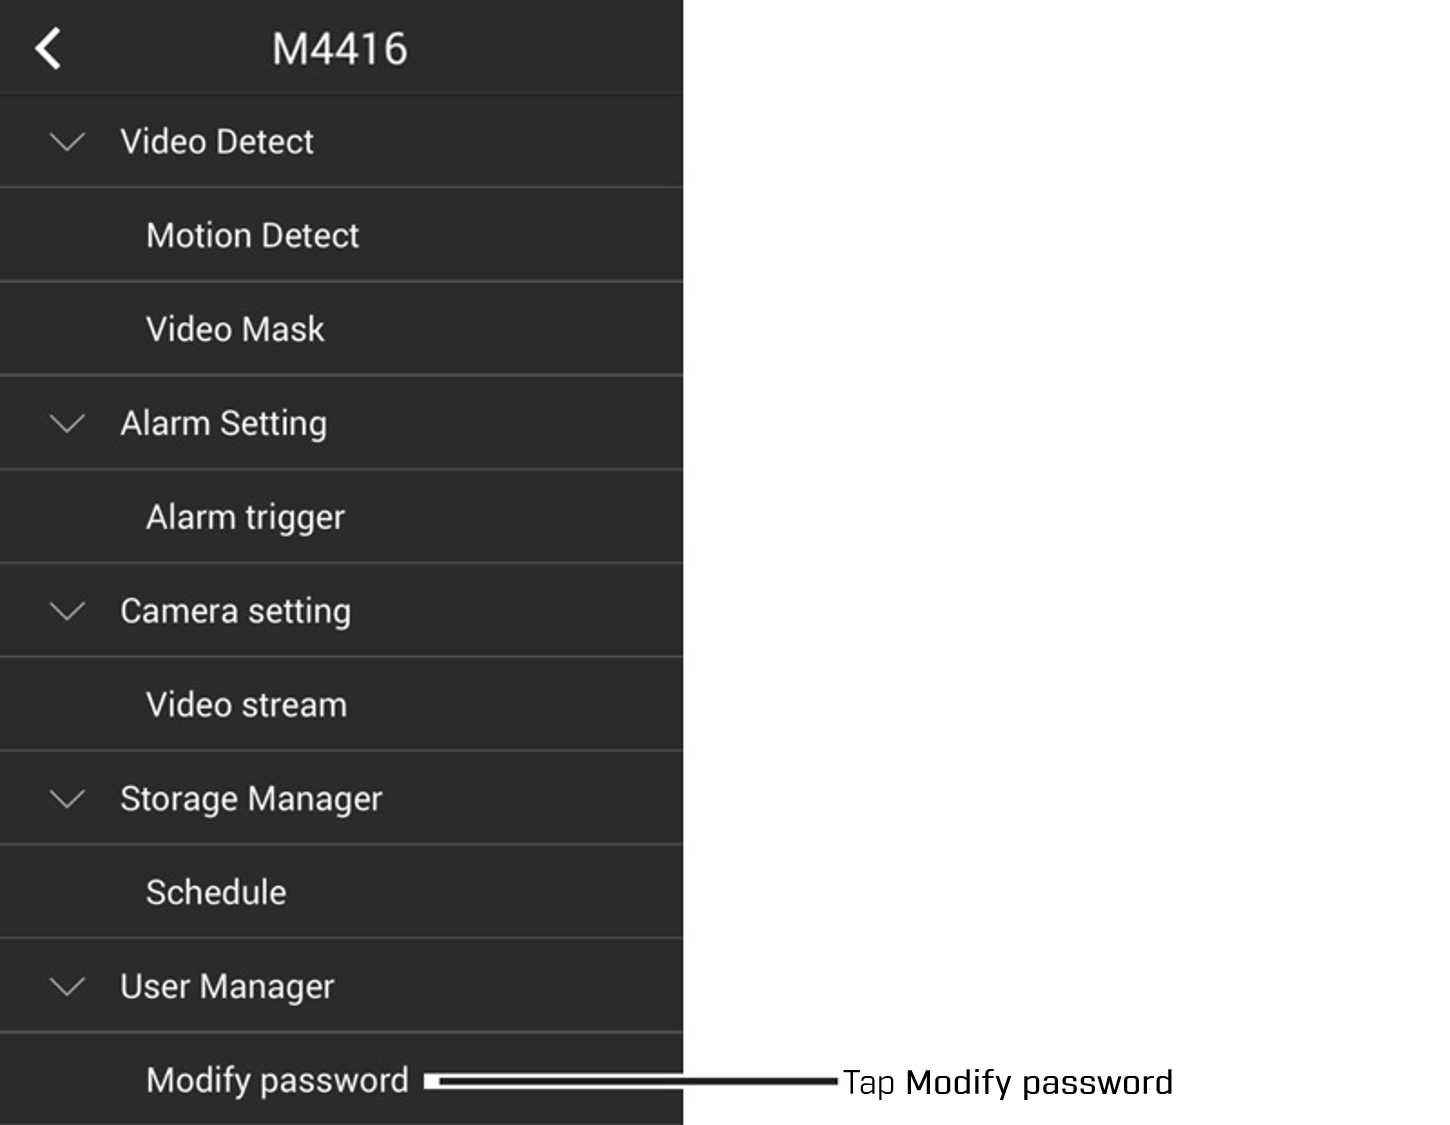 tap modify password